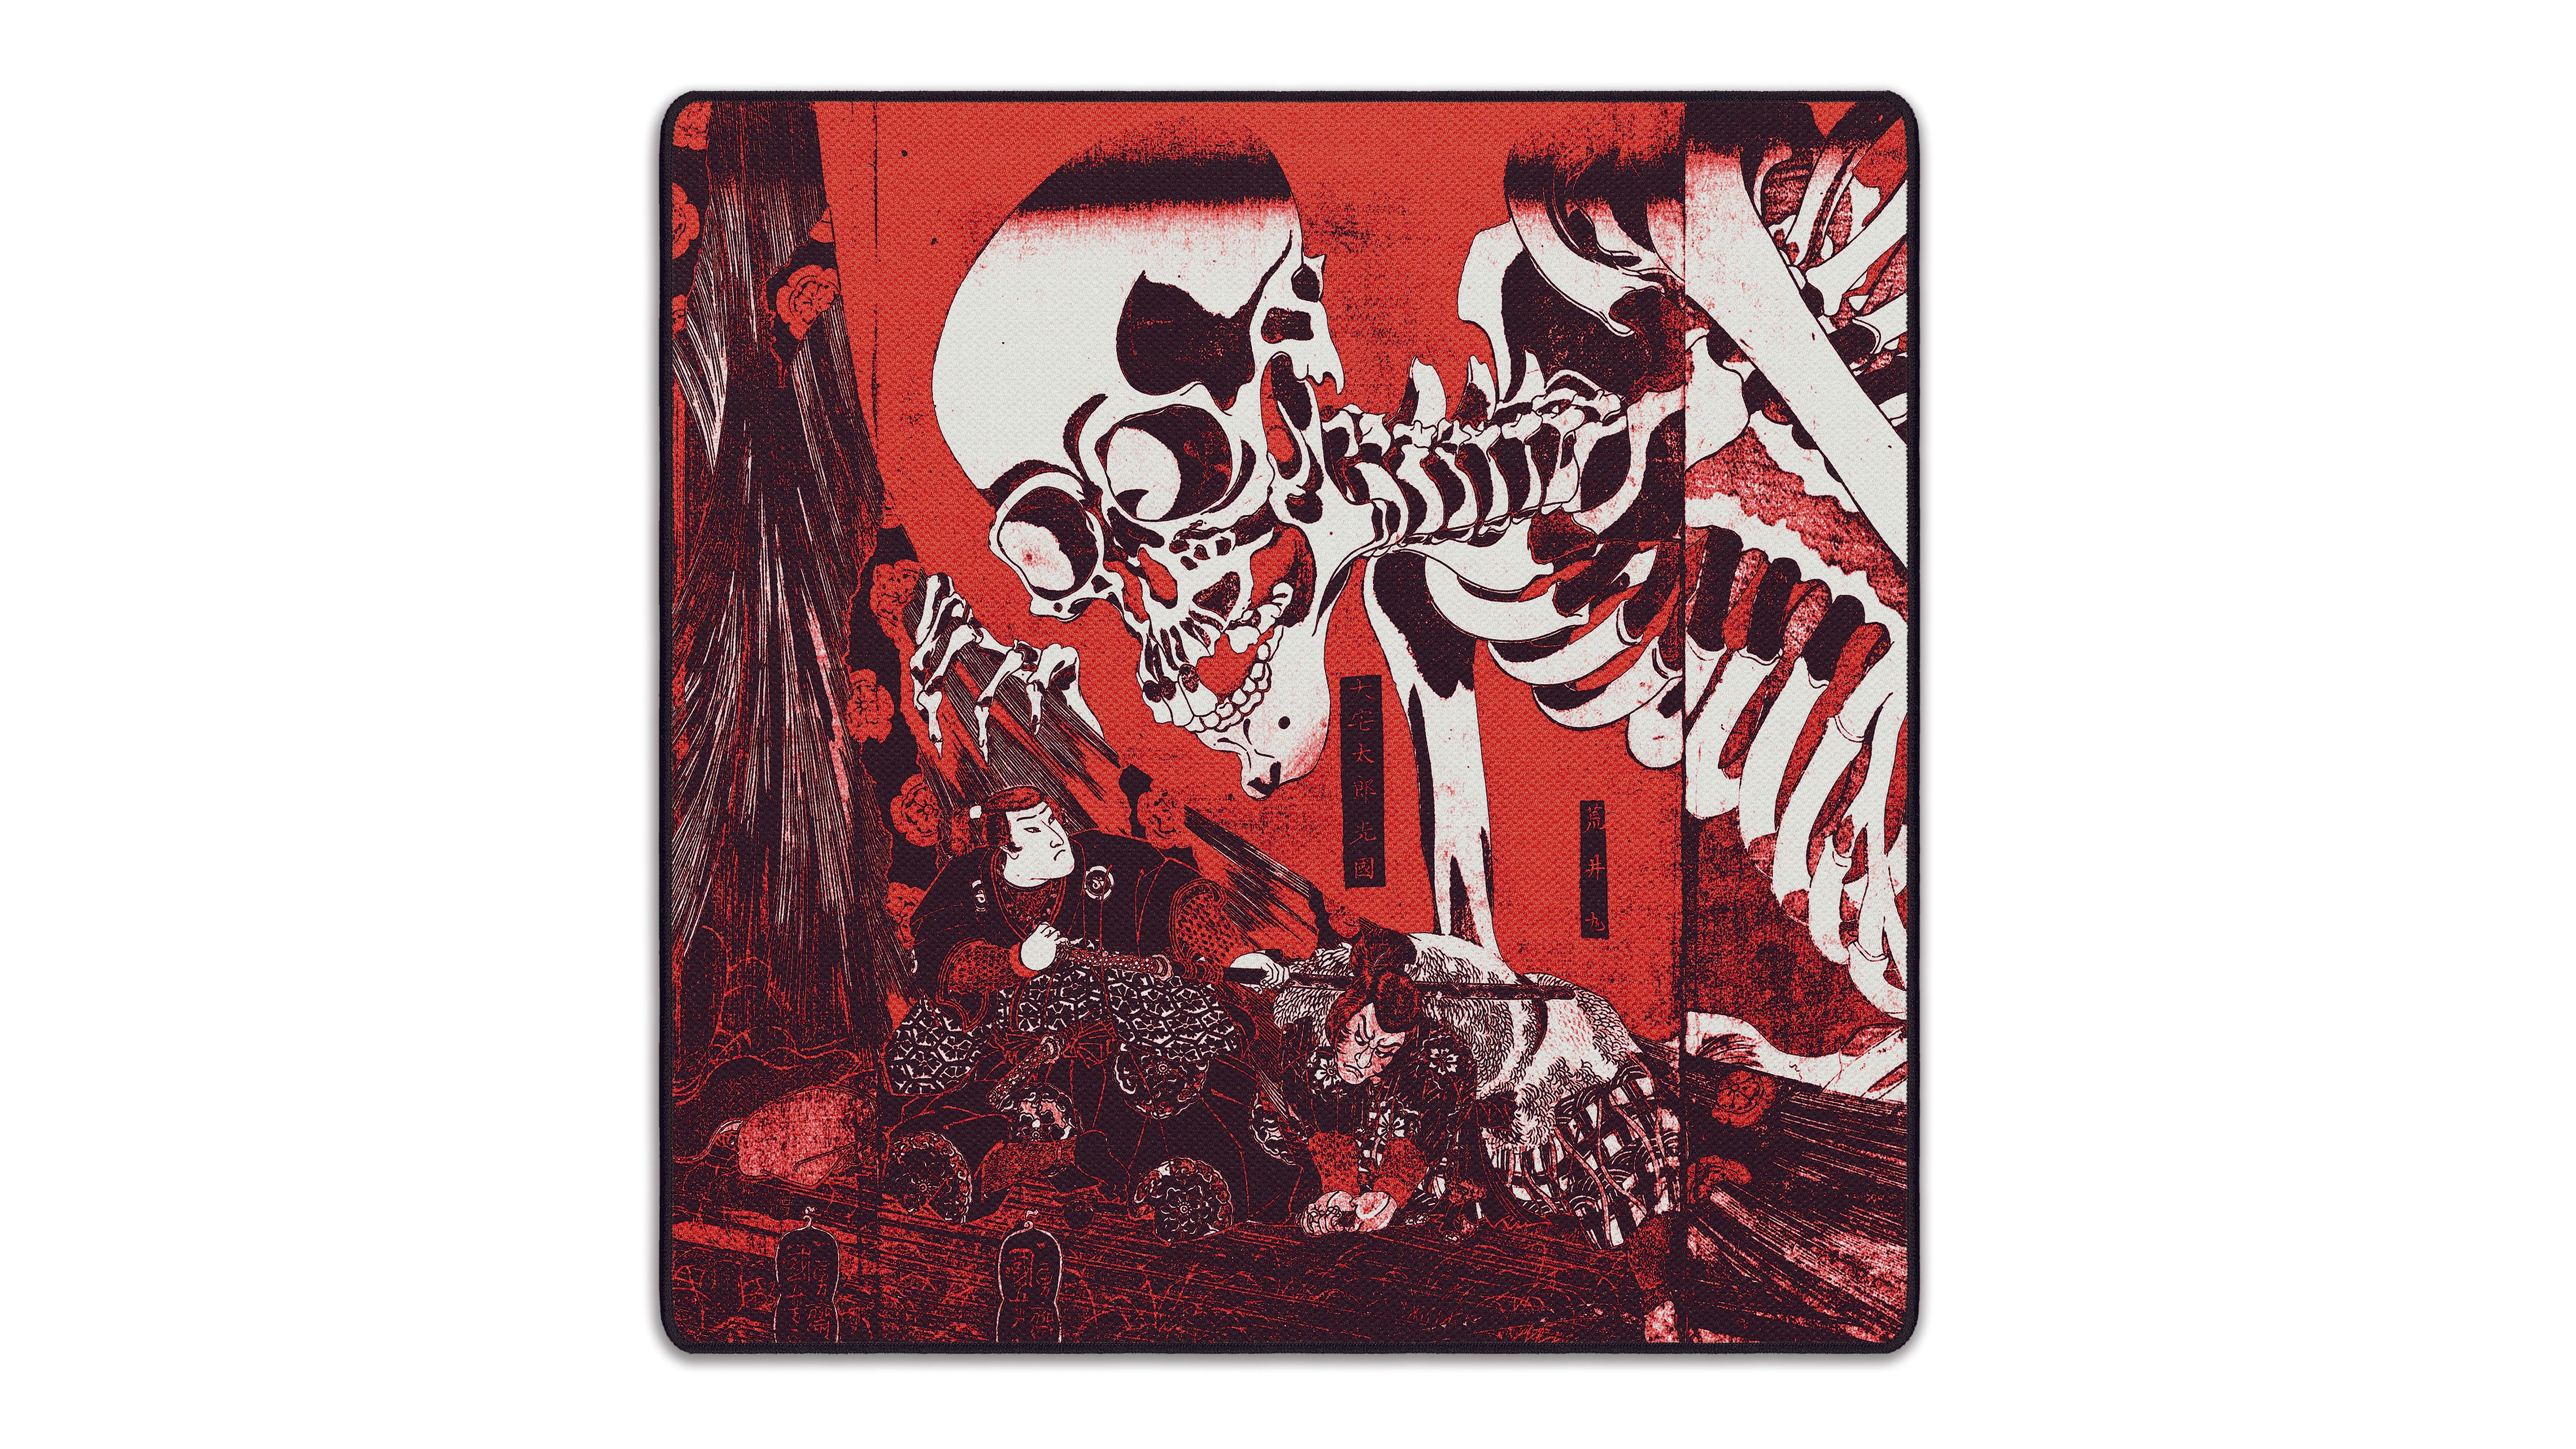 Skeleton Spectre, by Utagawa Kuniyoshi - The Mousepad Company